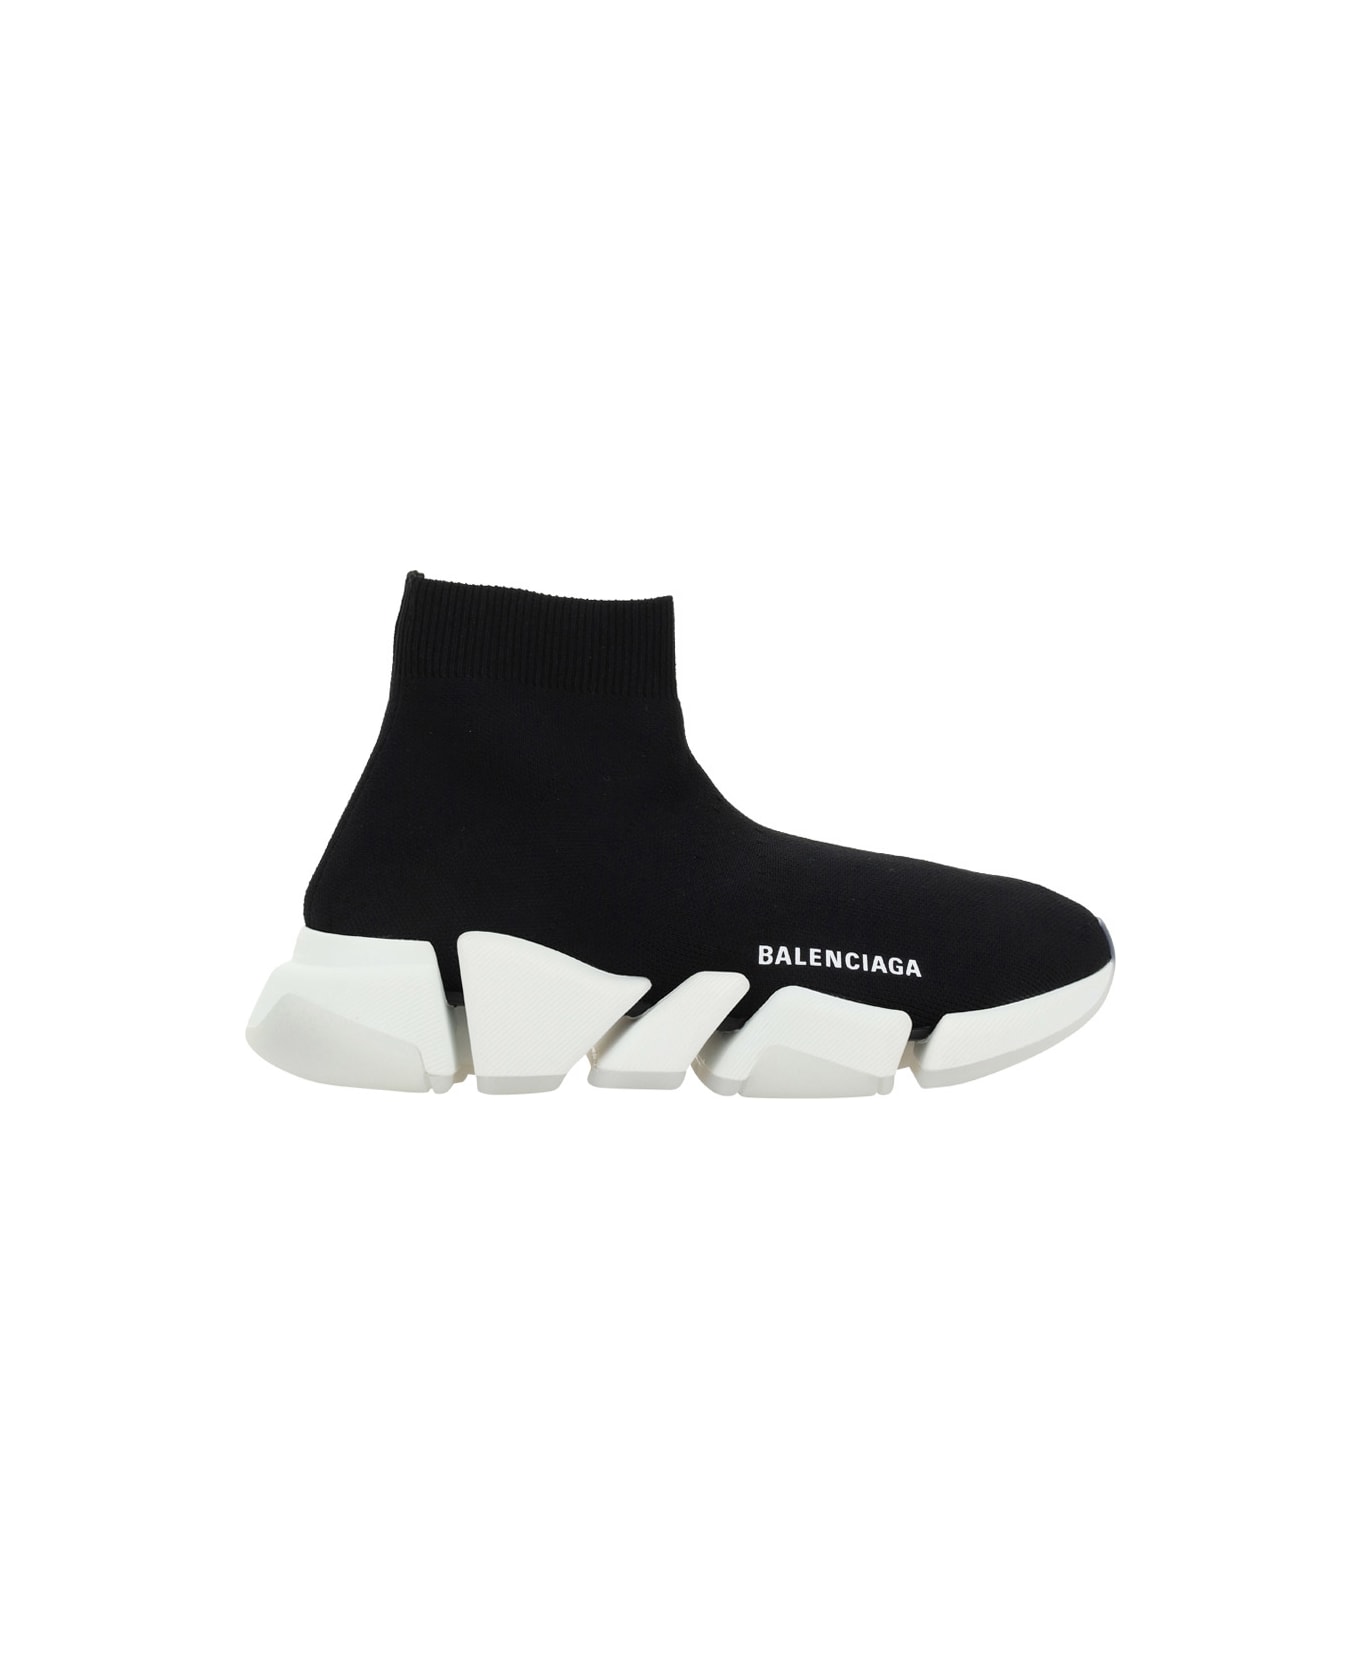 Balenciaga Speed Sneakers - Black/white/trasparent